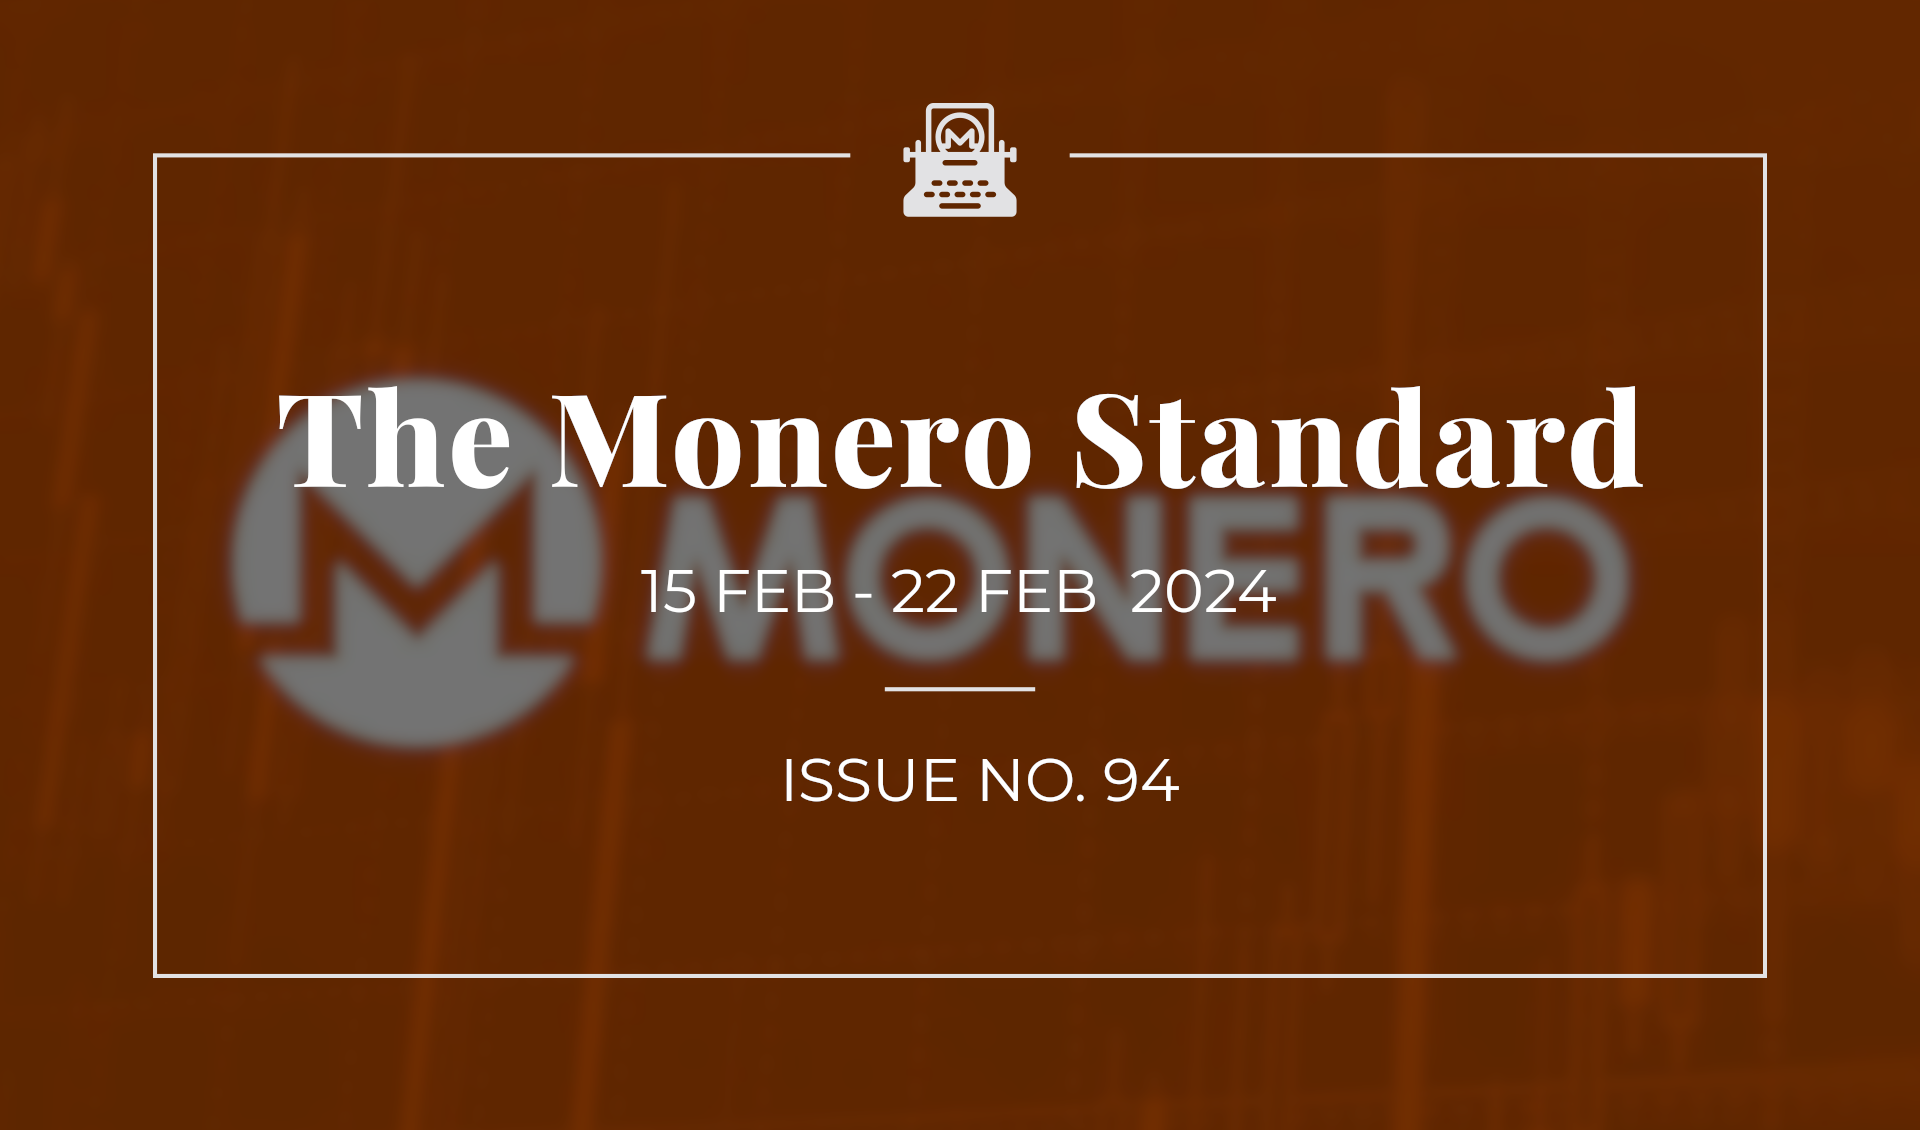 The Monero Standard #94: 15 Feb 2023 - 22 Feb 2024